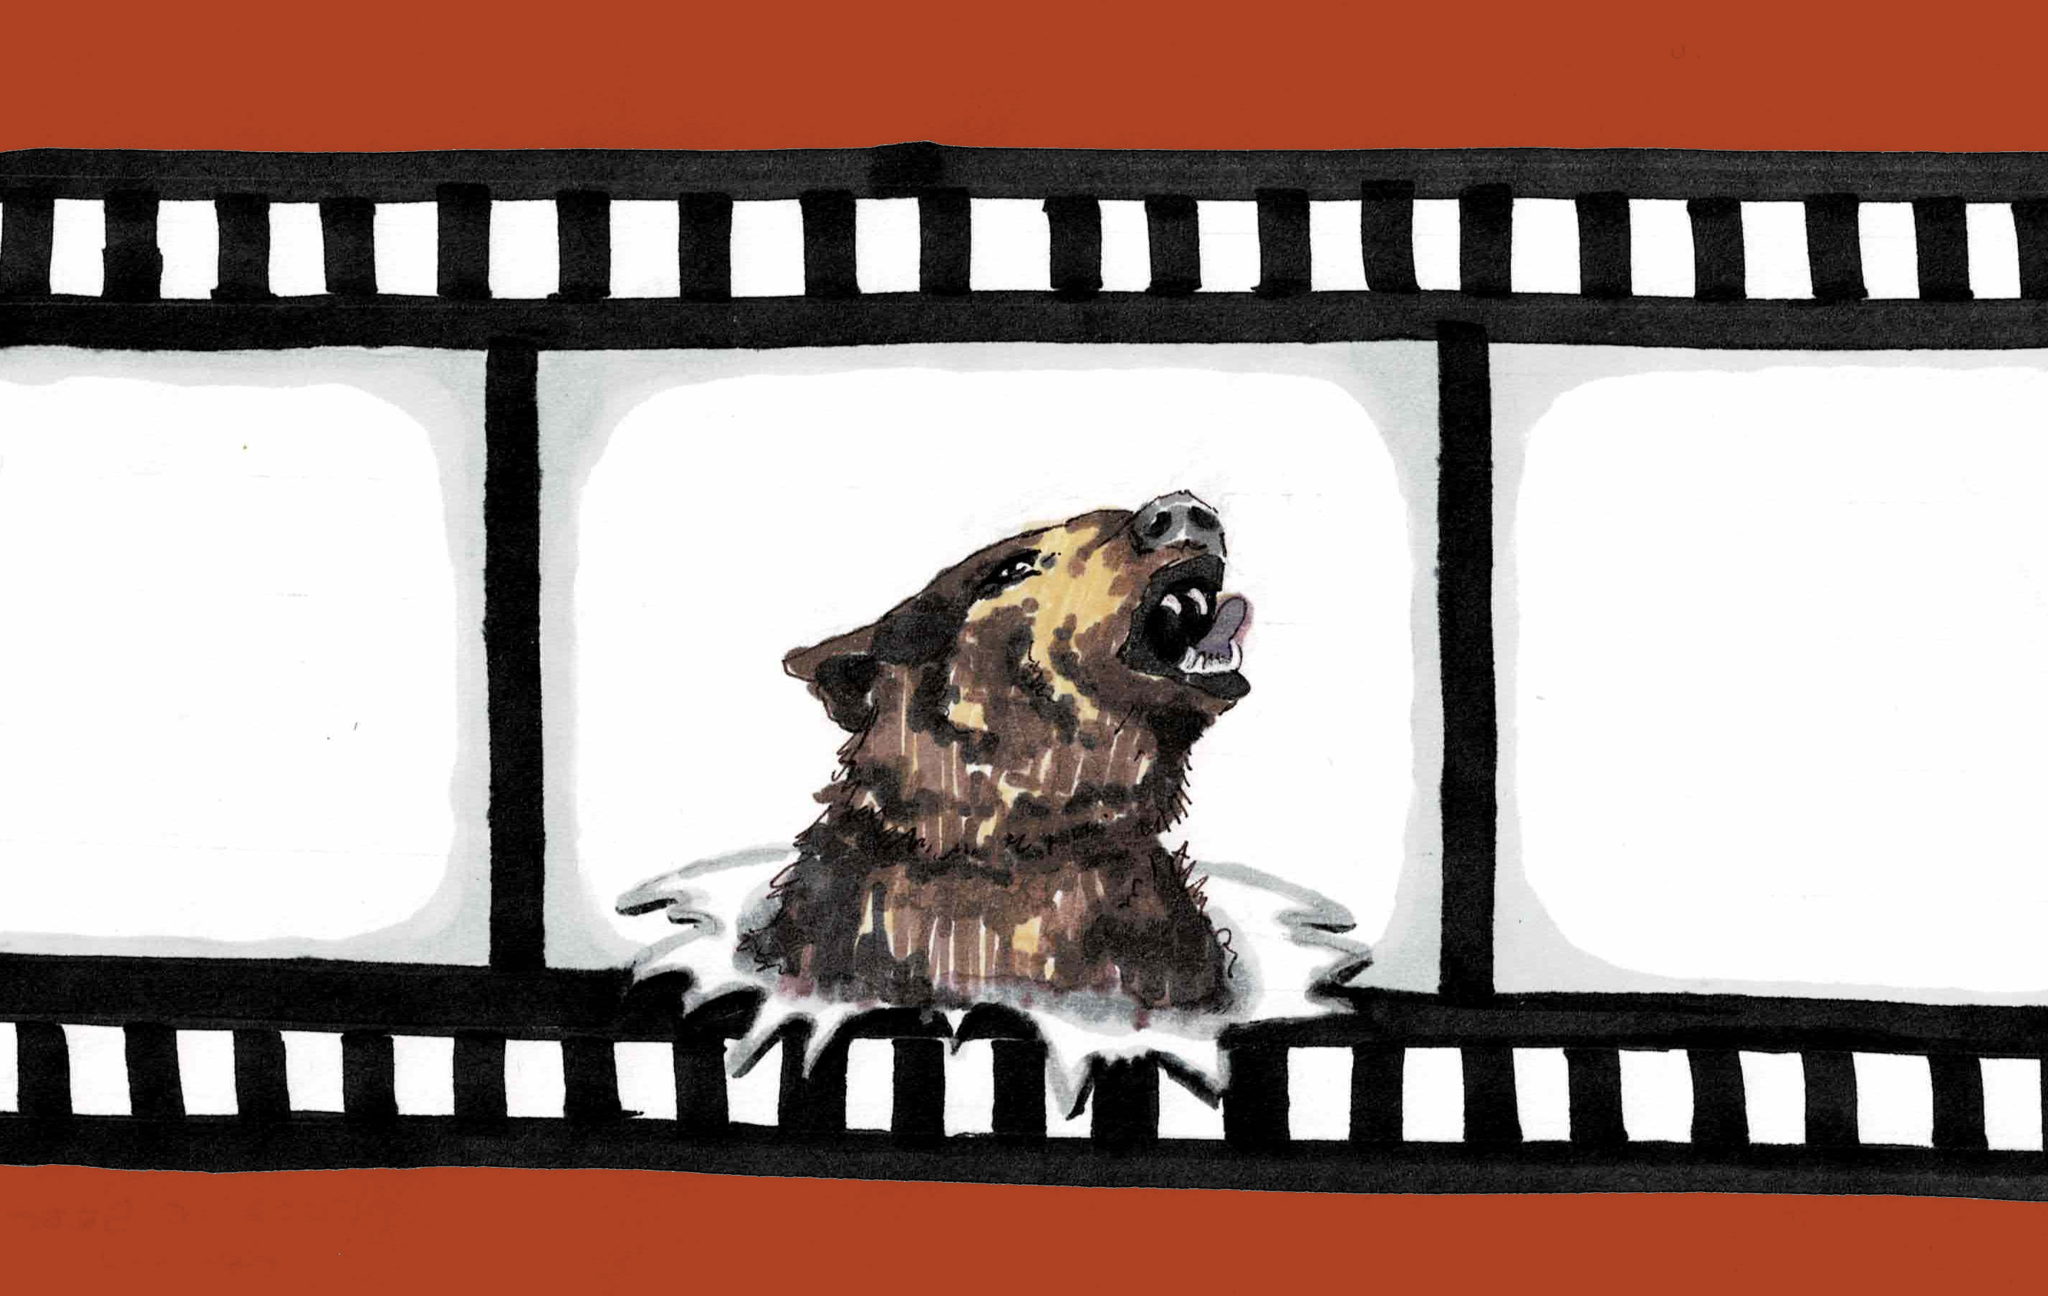 A brown bear breaking through a strip of film tape.